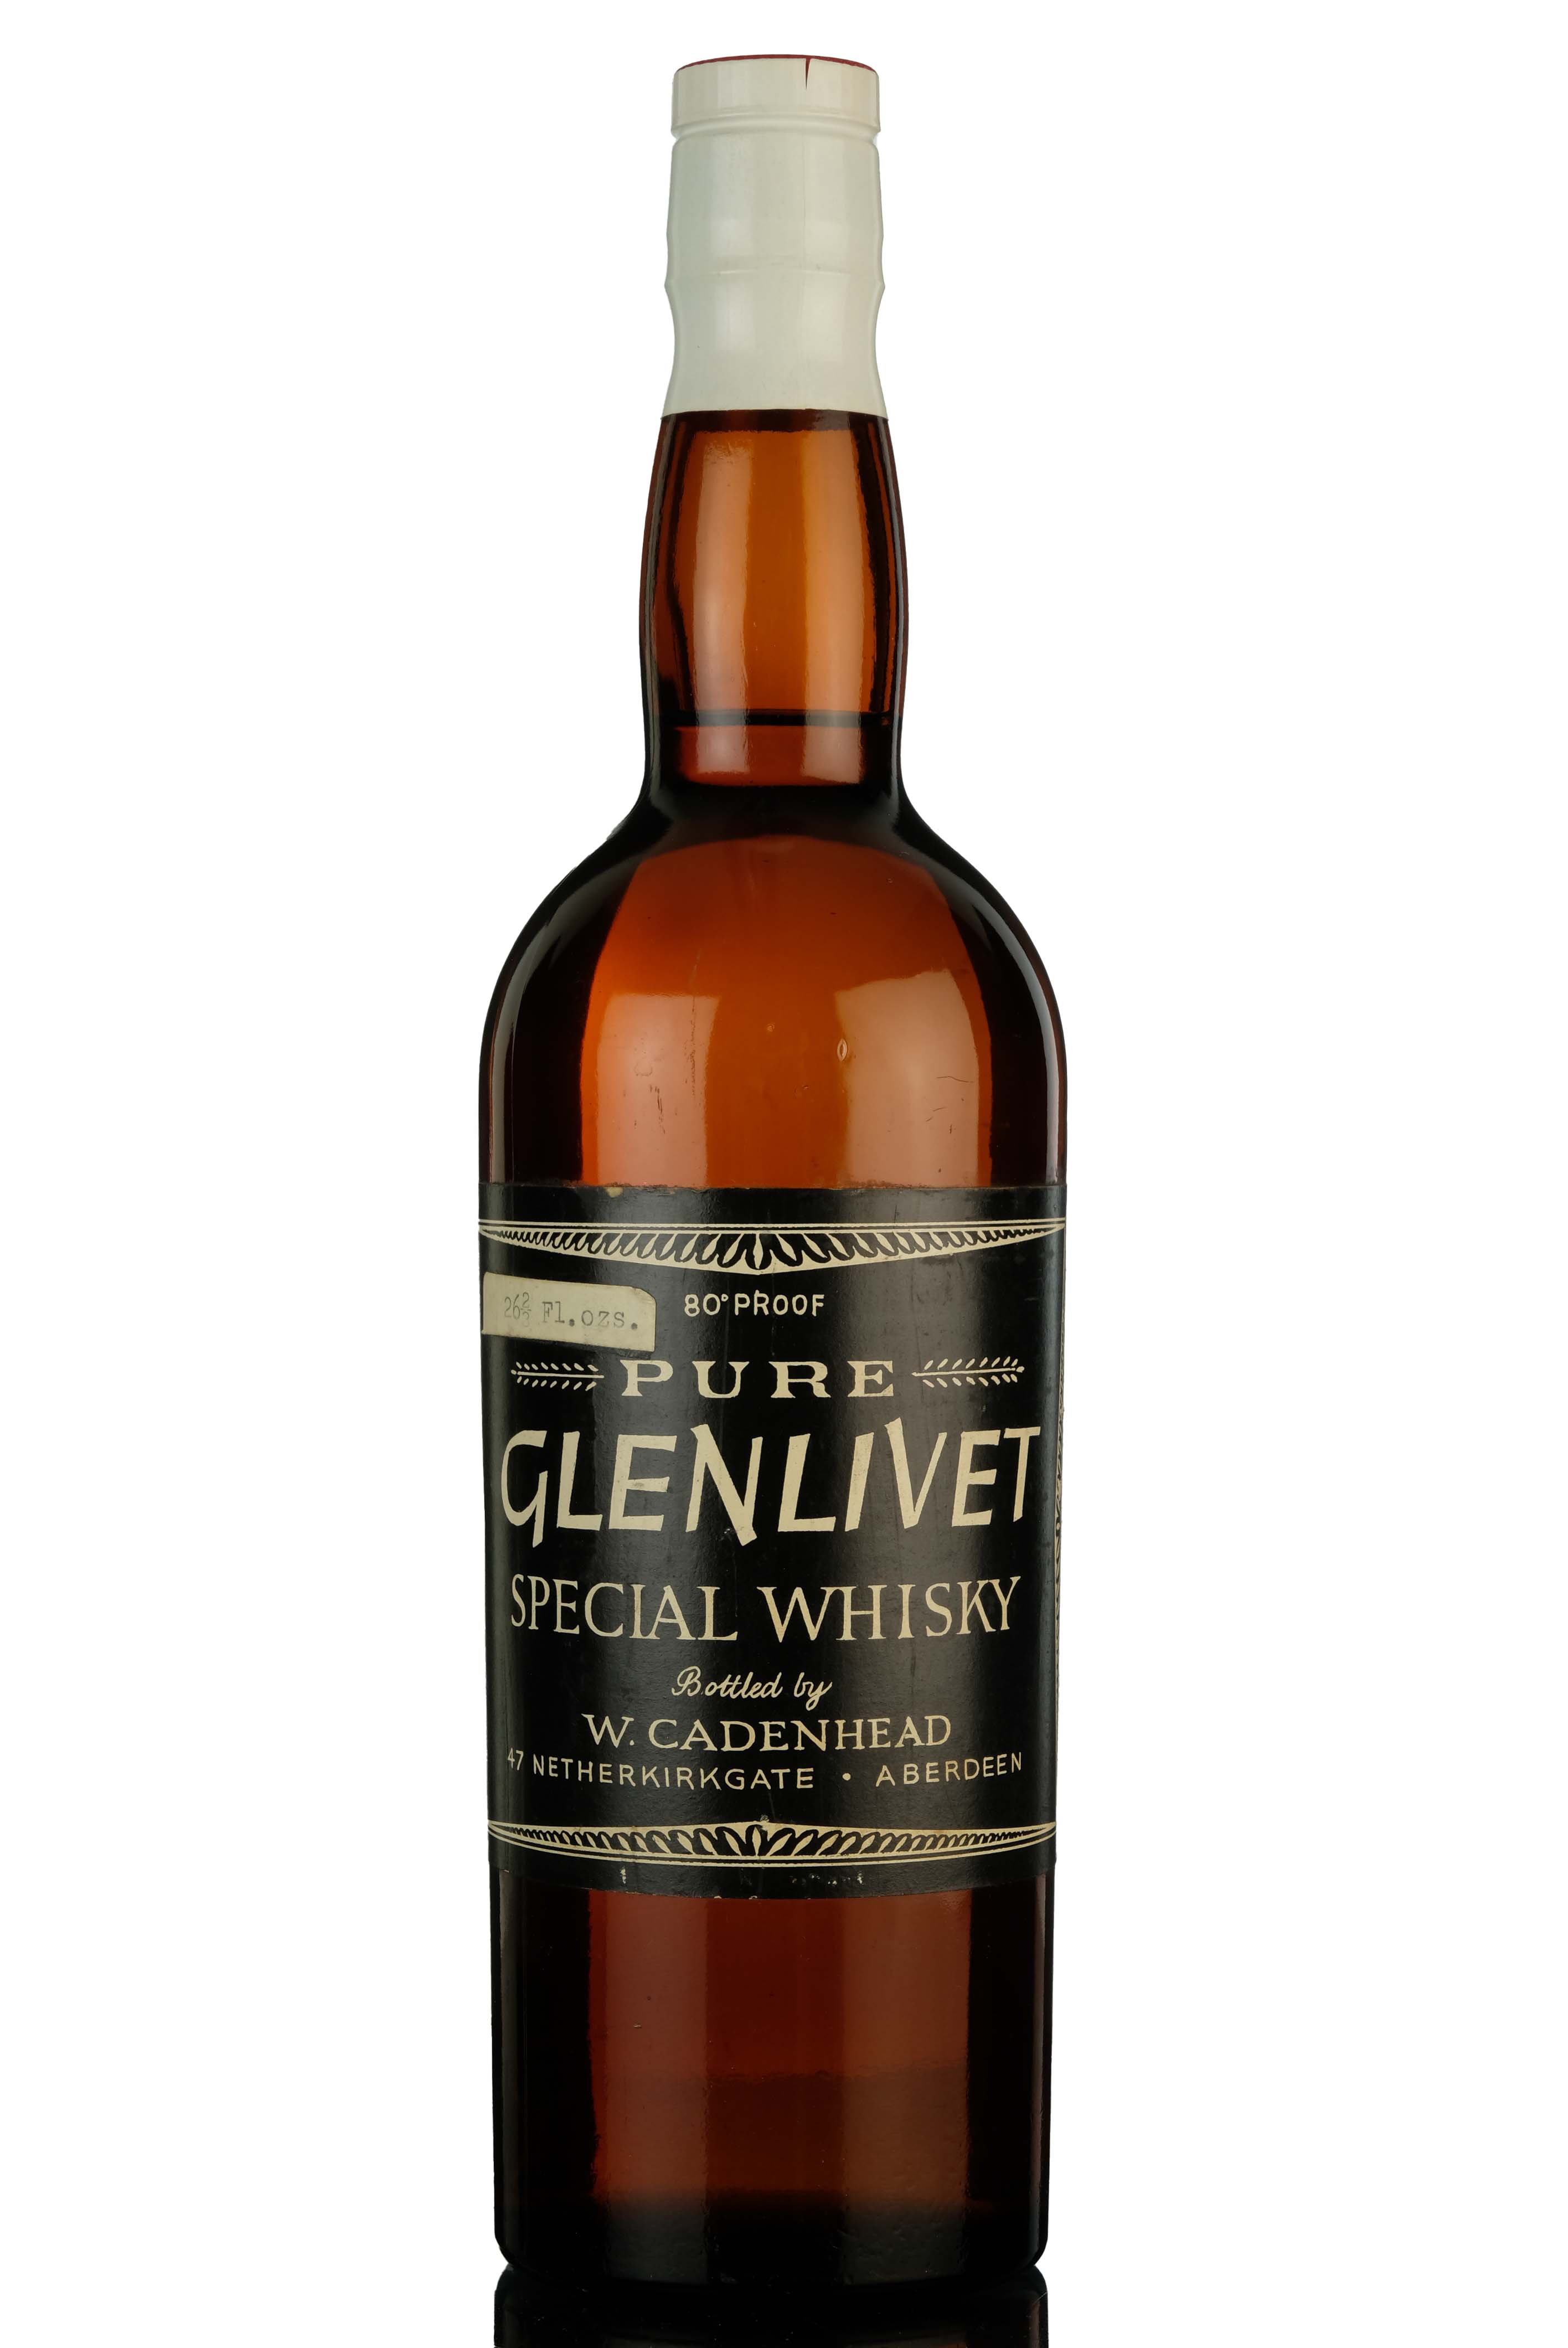 Glenlivet Pure Special Whisky - Cadenheads - 1960s